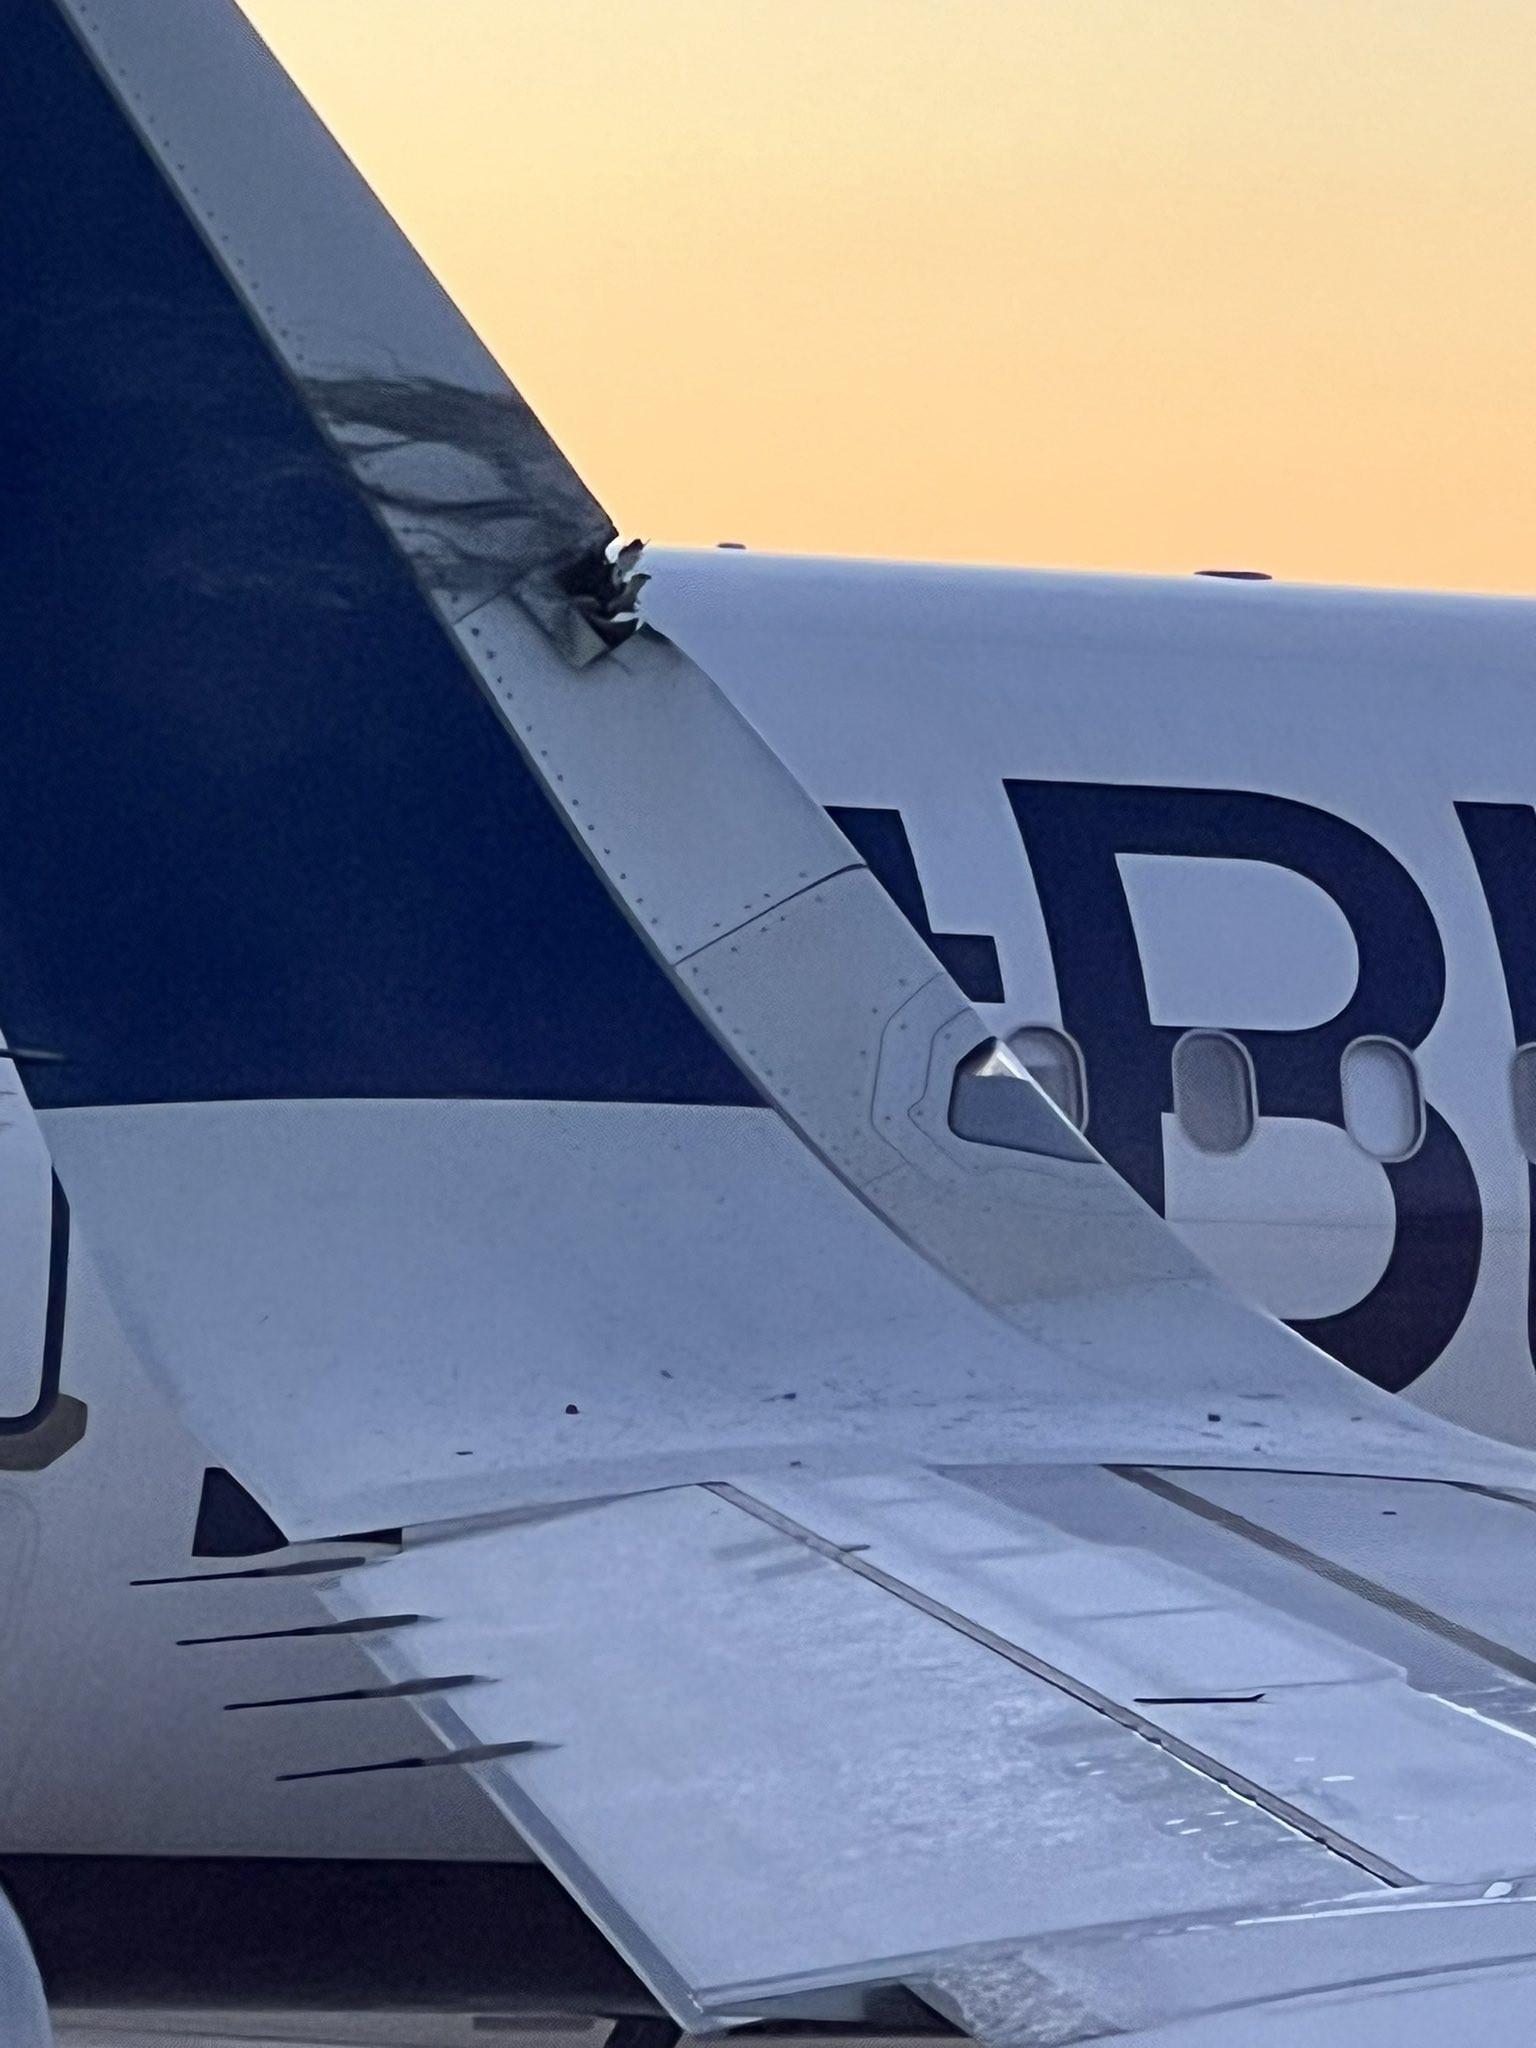 2 máy bay Airbus A321 va chạm trên đường băng sứt đuôi mẻ cánh-2